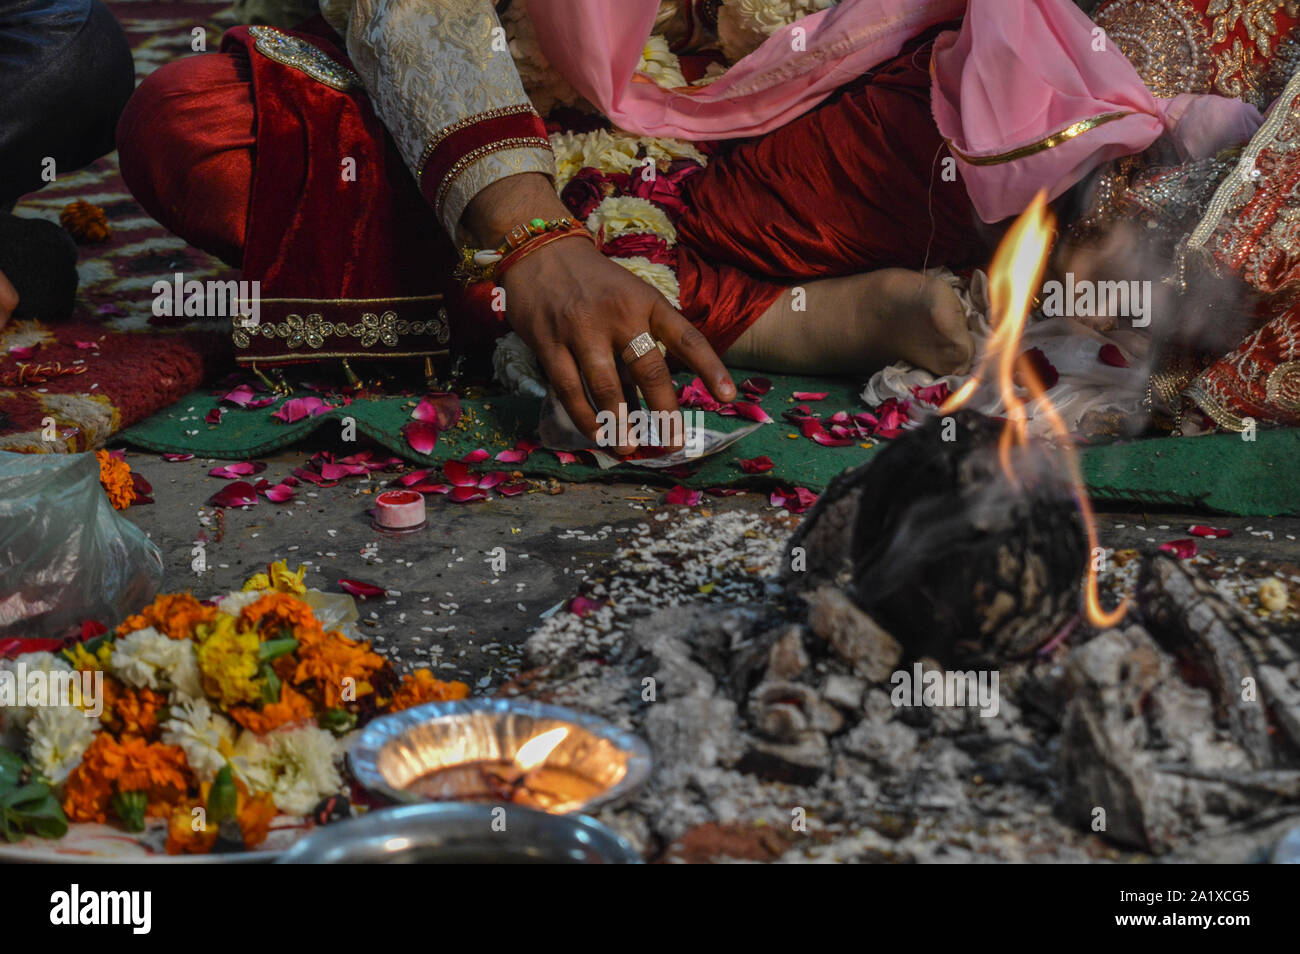 Appena prima di groom andando a mettere il colore rosso(sindoor) sulla testa di sposa in uno dei rituali nel matrimonio indiano. Foto Stock